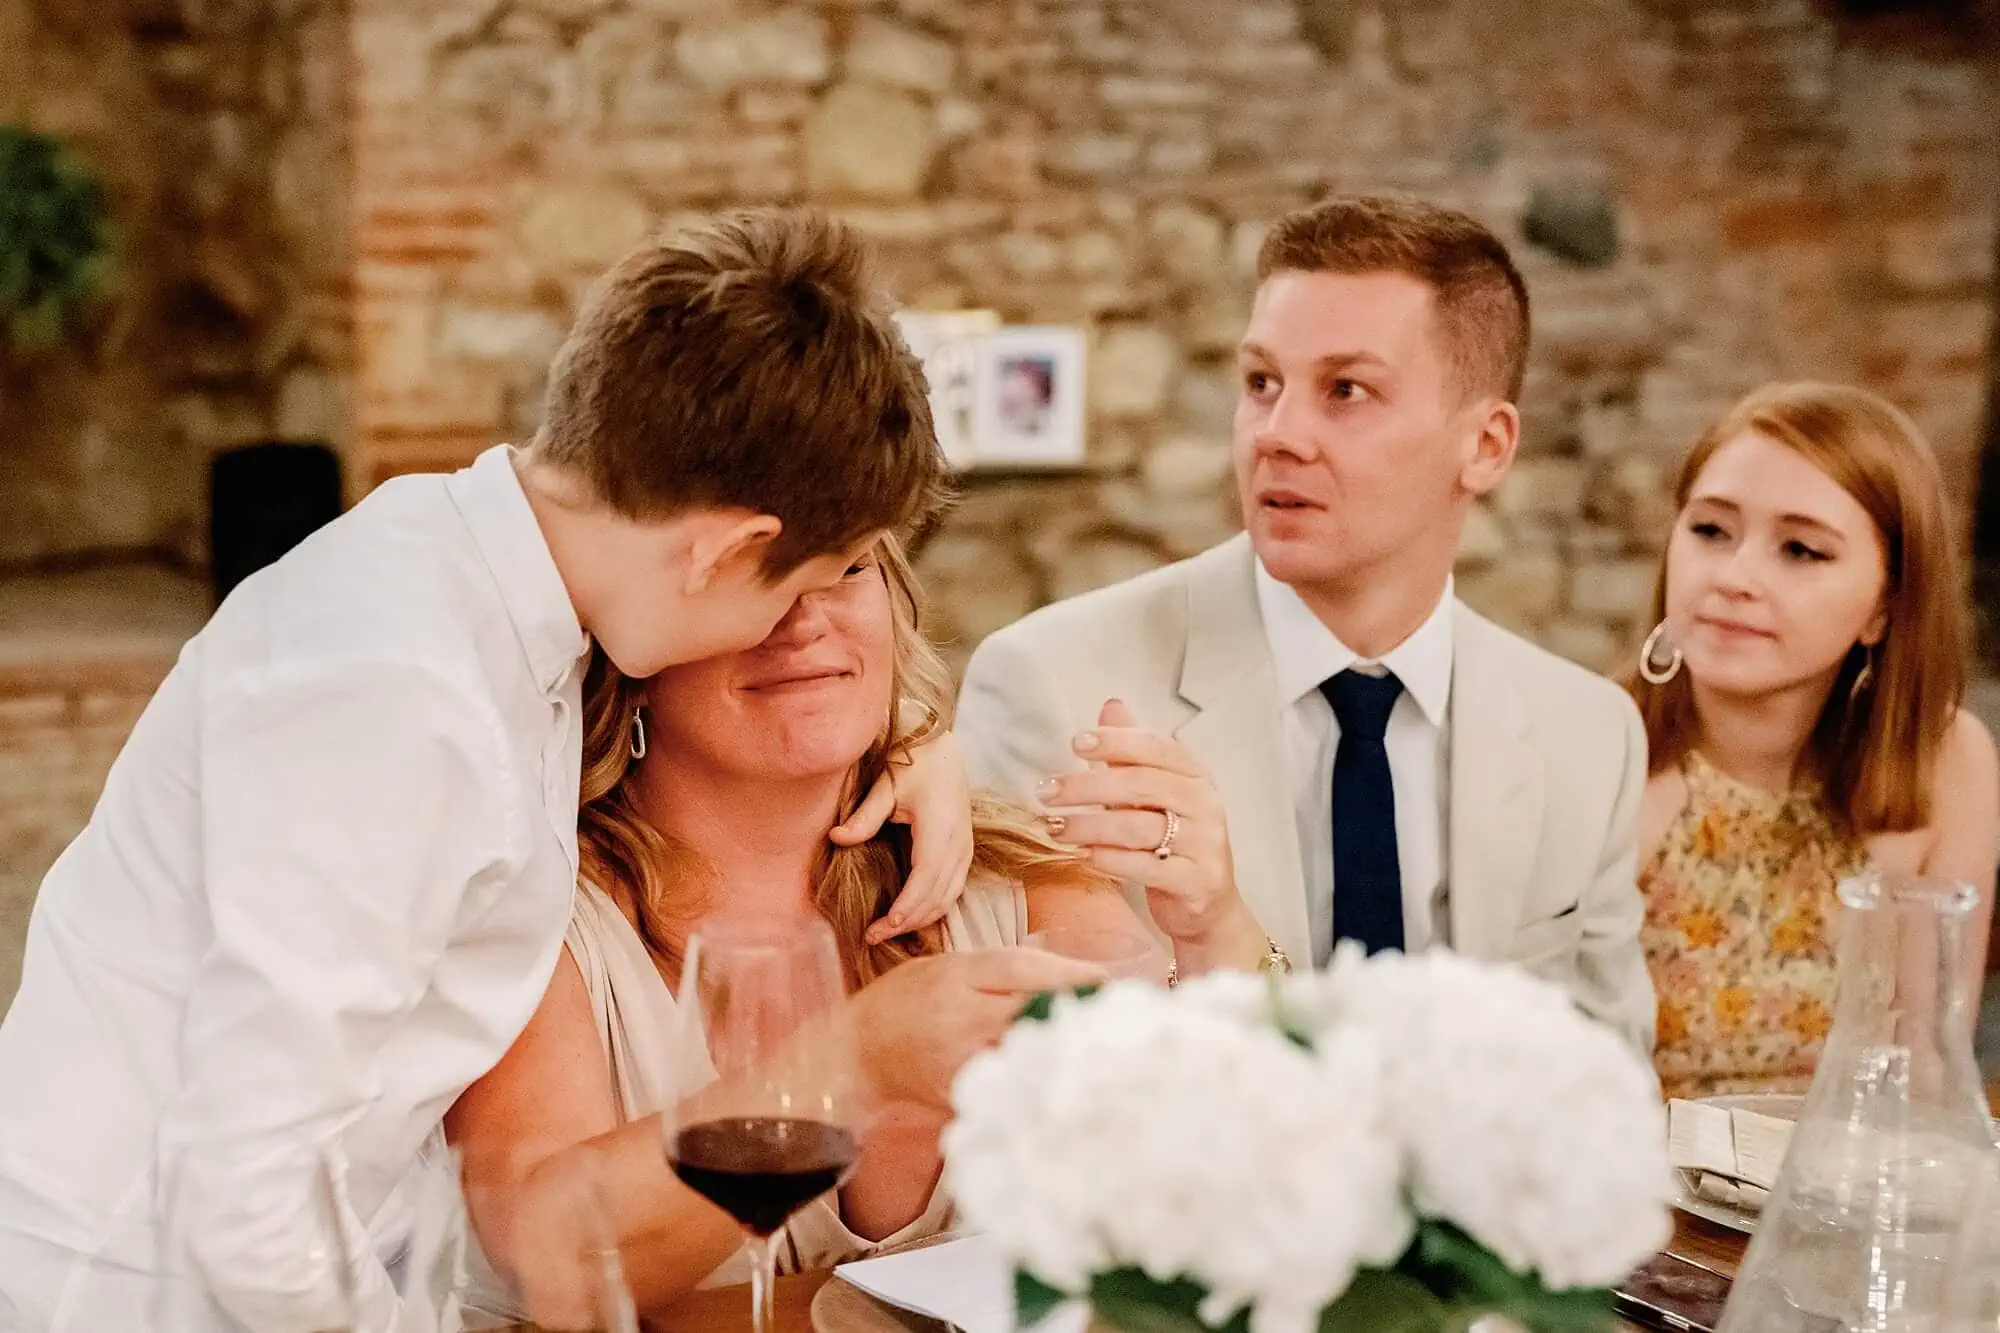 son comforting crying mum at Tuscany wedding